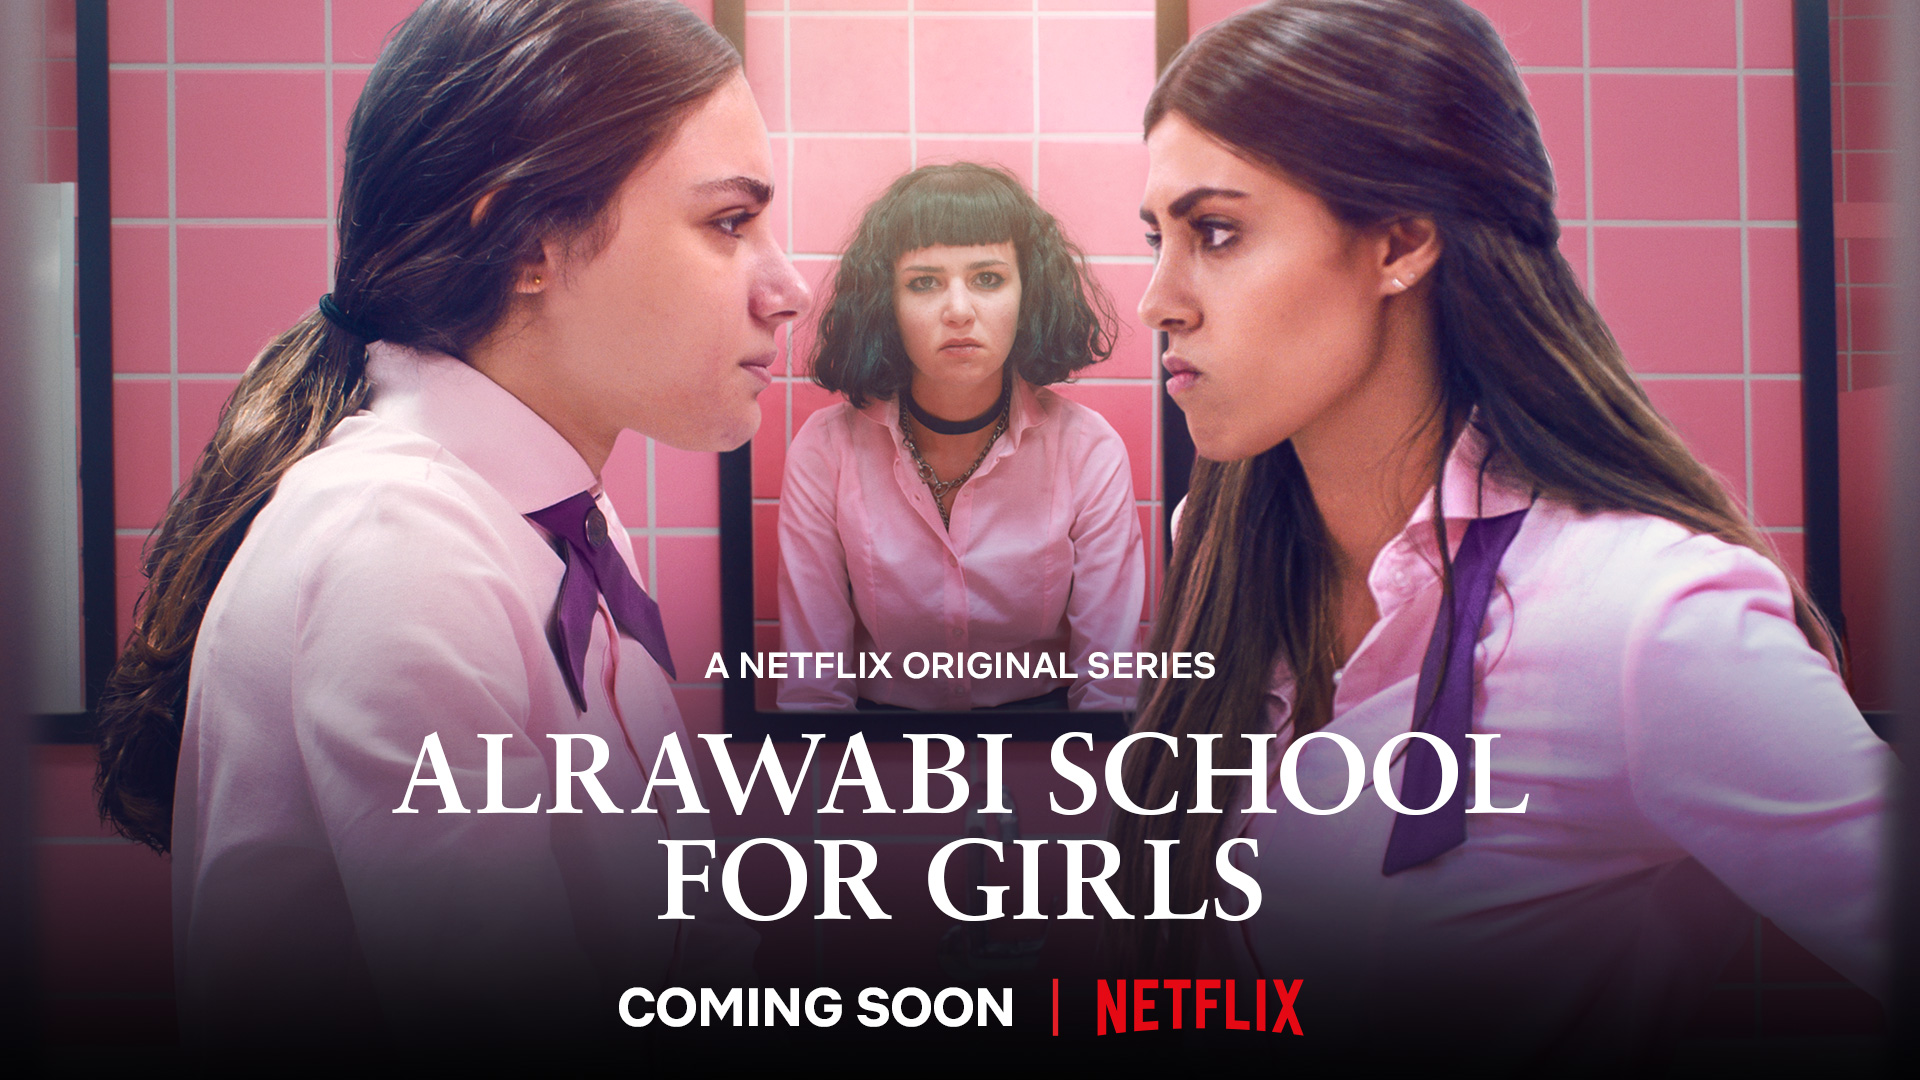 Arabska szkoła dla dziewcząt, przyjemne romansidło z przekazem oraz o nieco zbuntowanej dziewczynie, czyli ponownie trochę kultury!